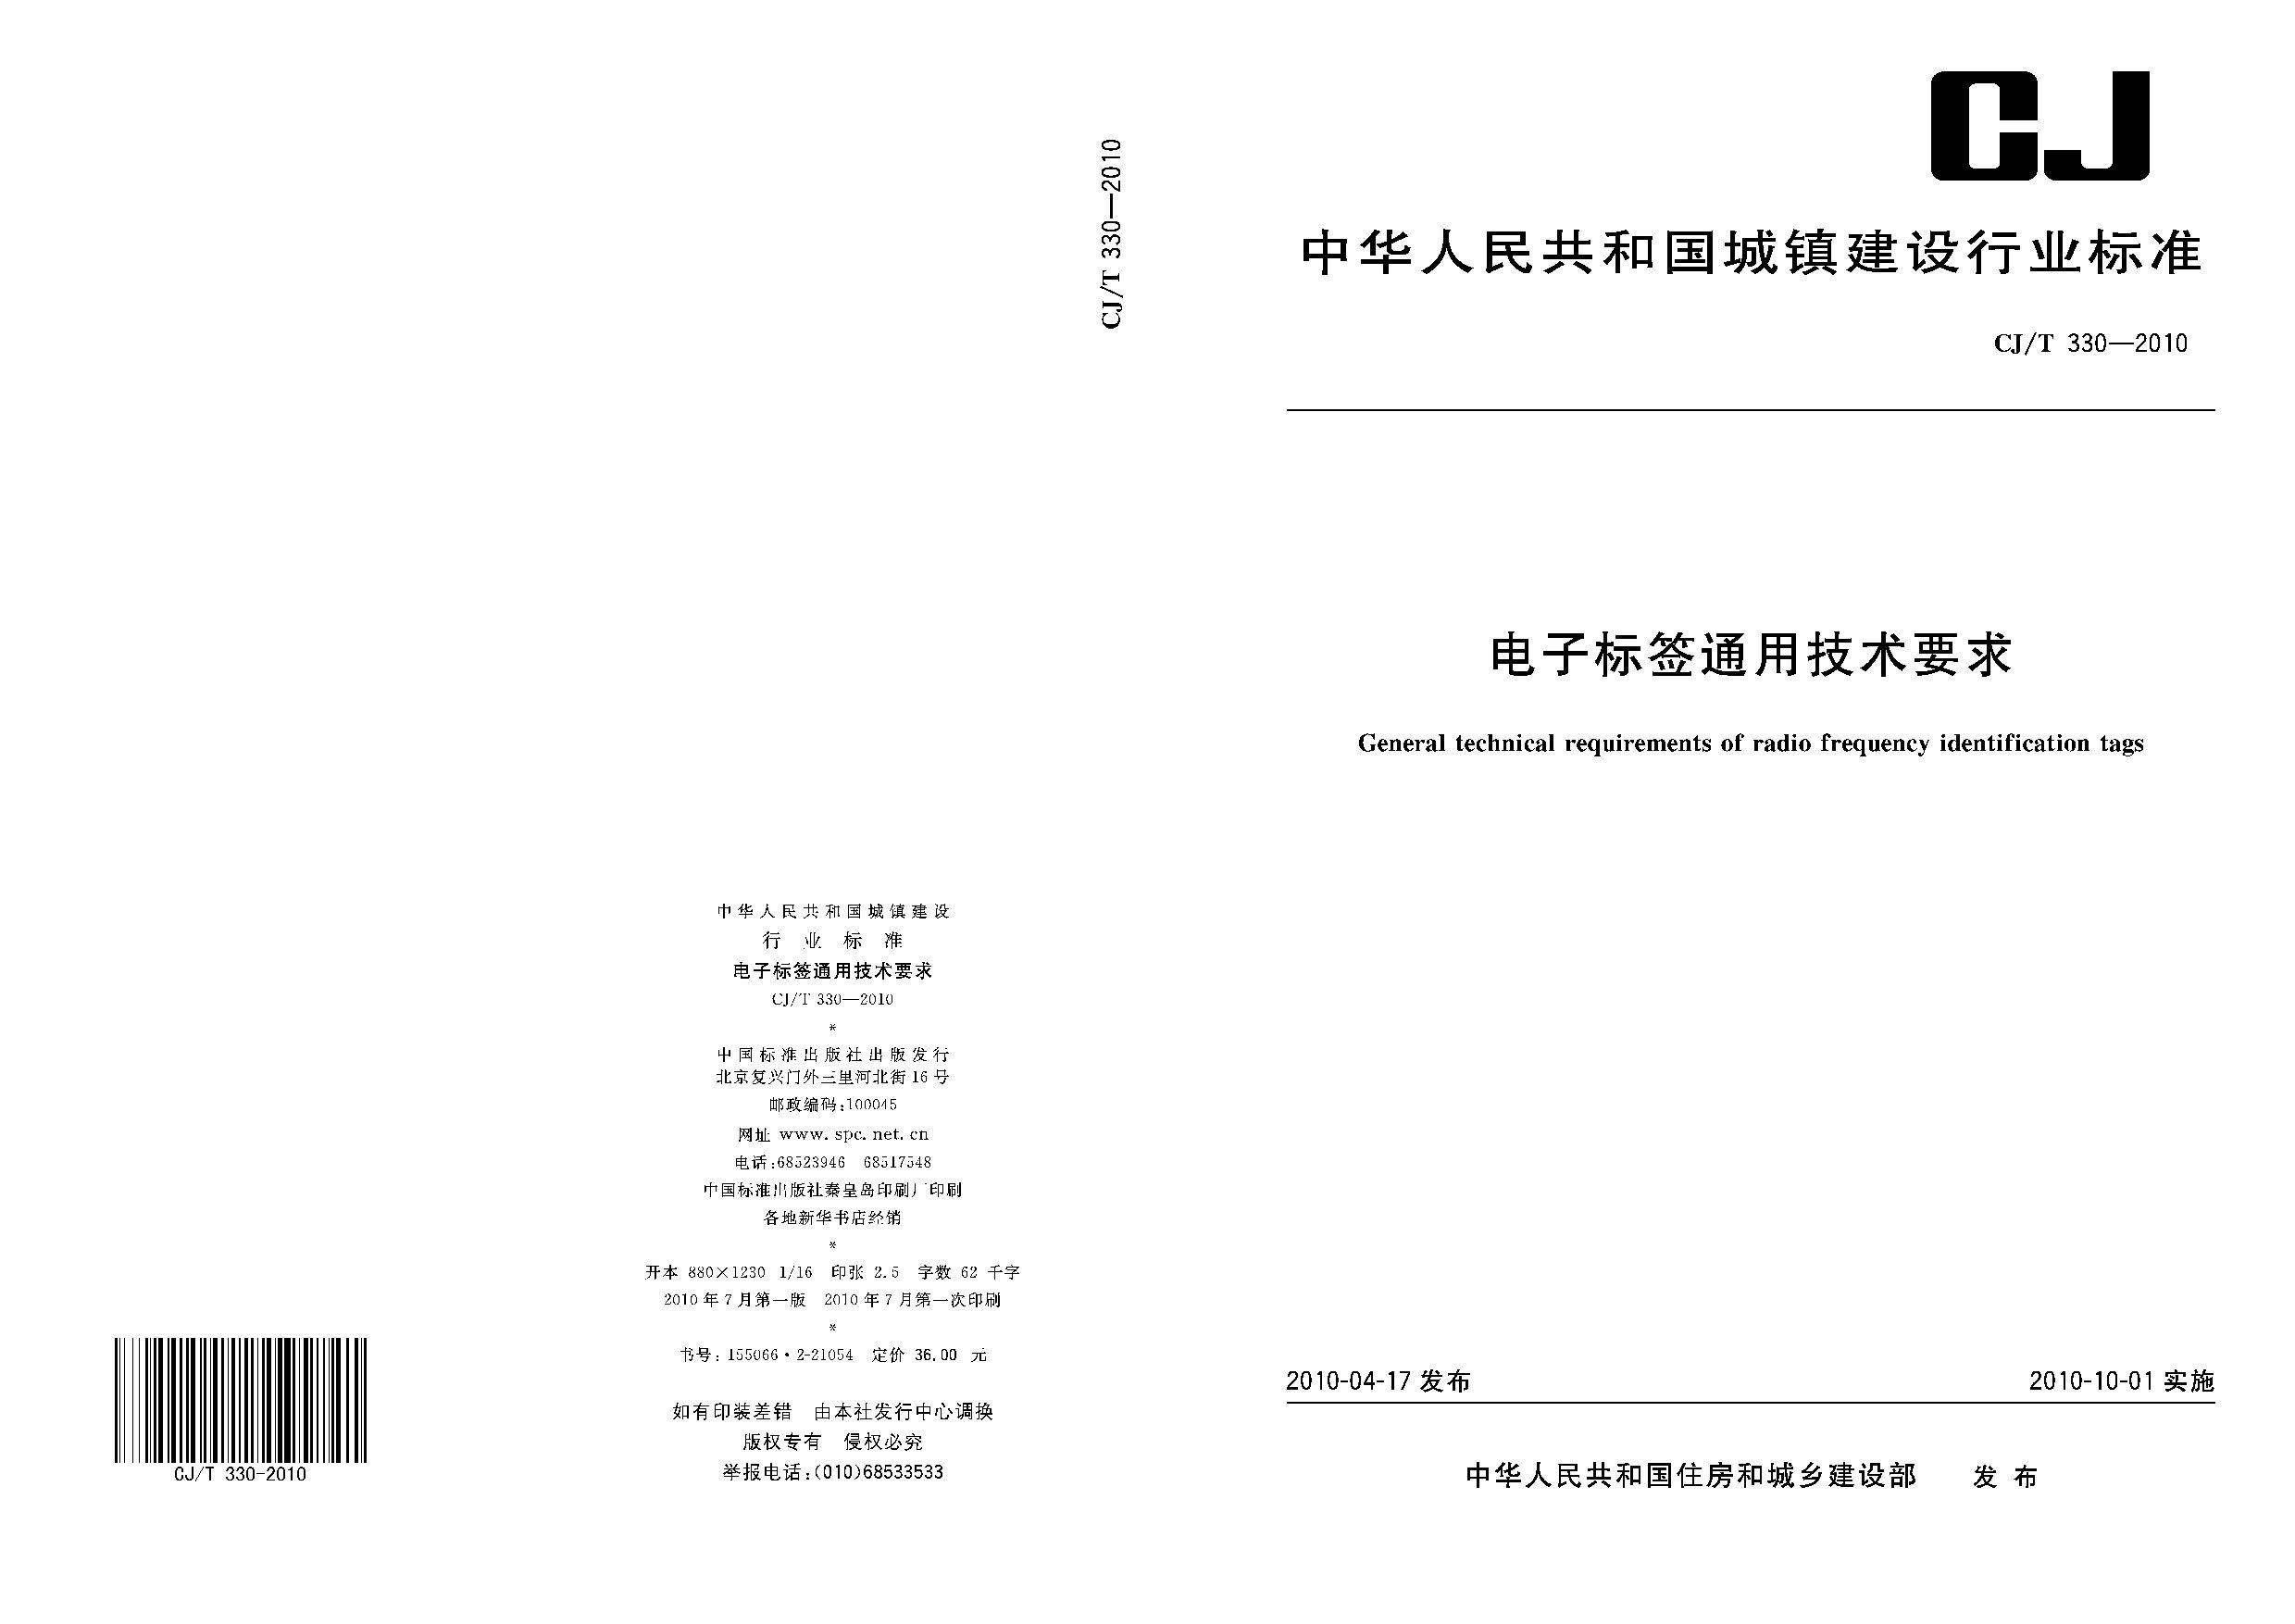 CJ/T 330-2010封面图